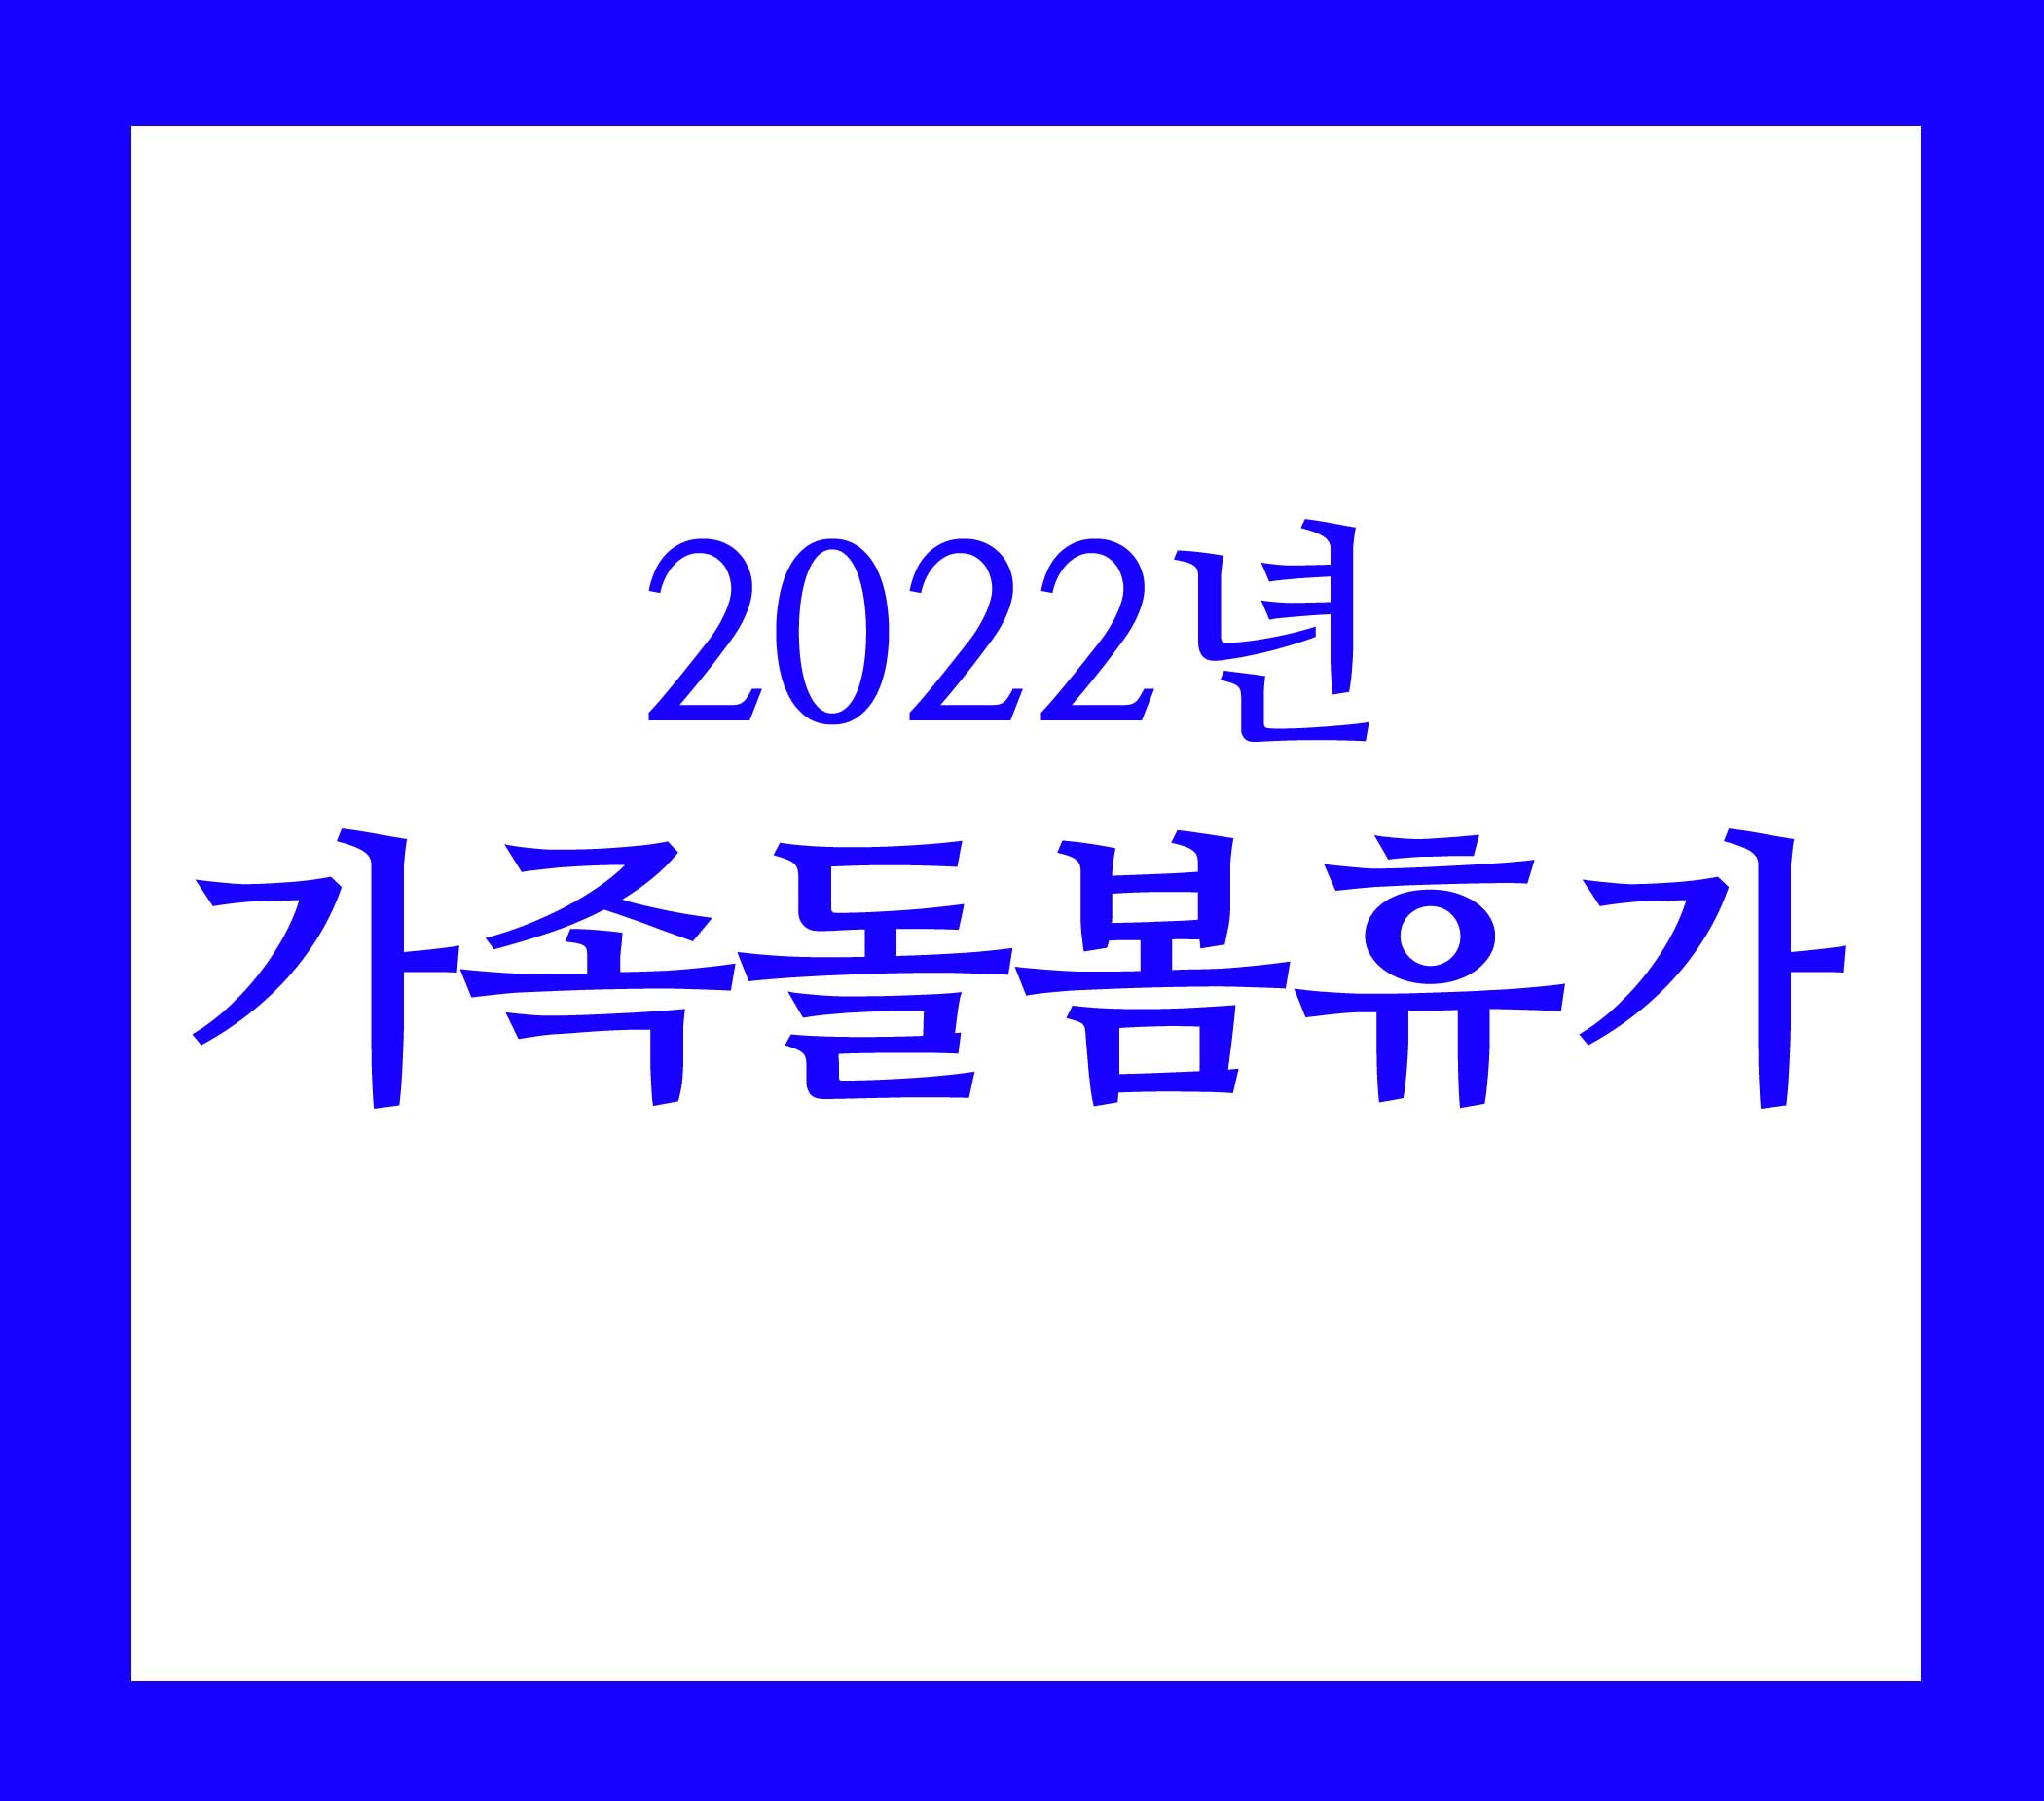 2022년 가족돌봄휴가